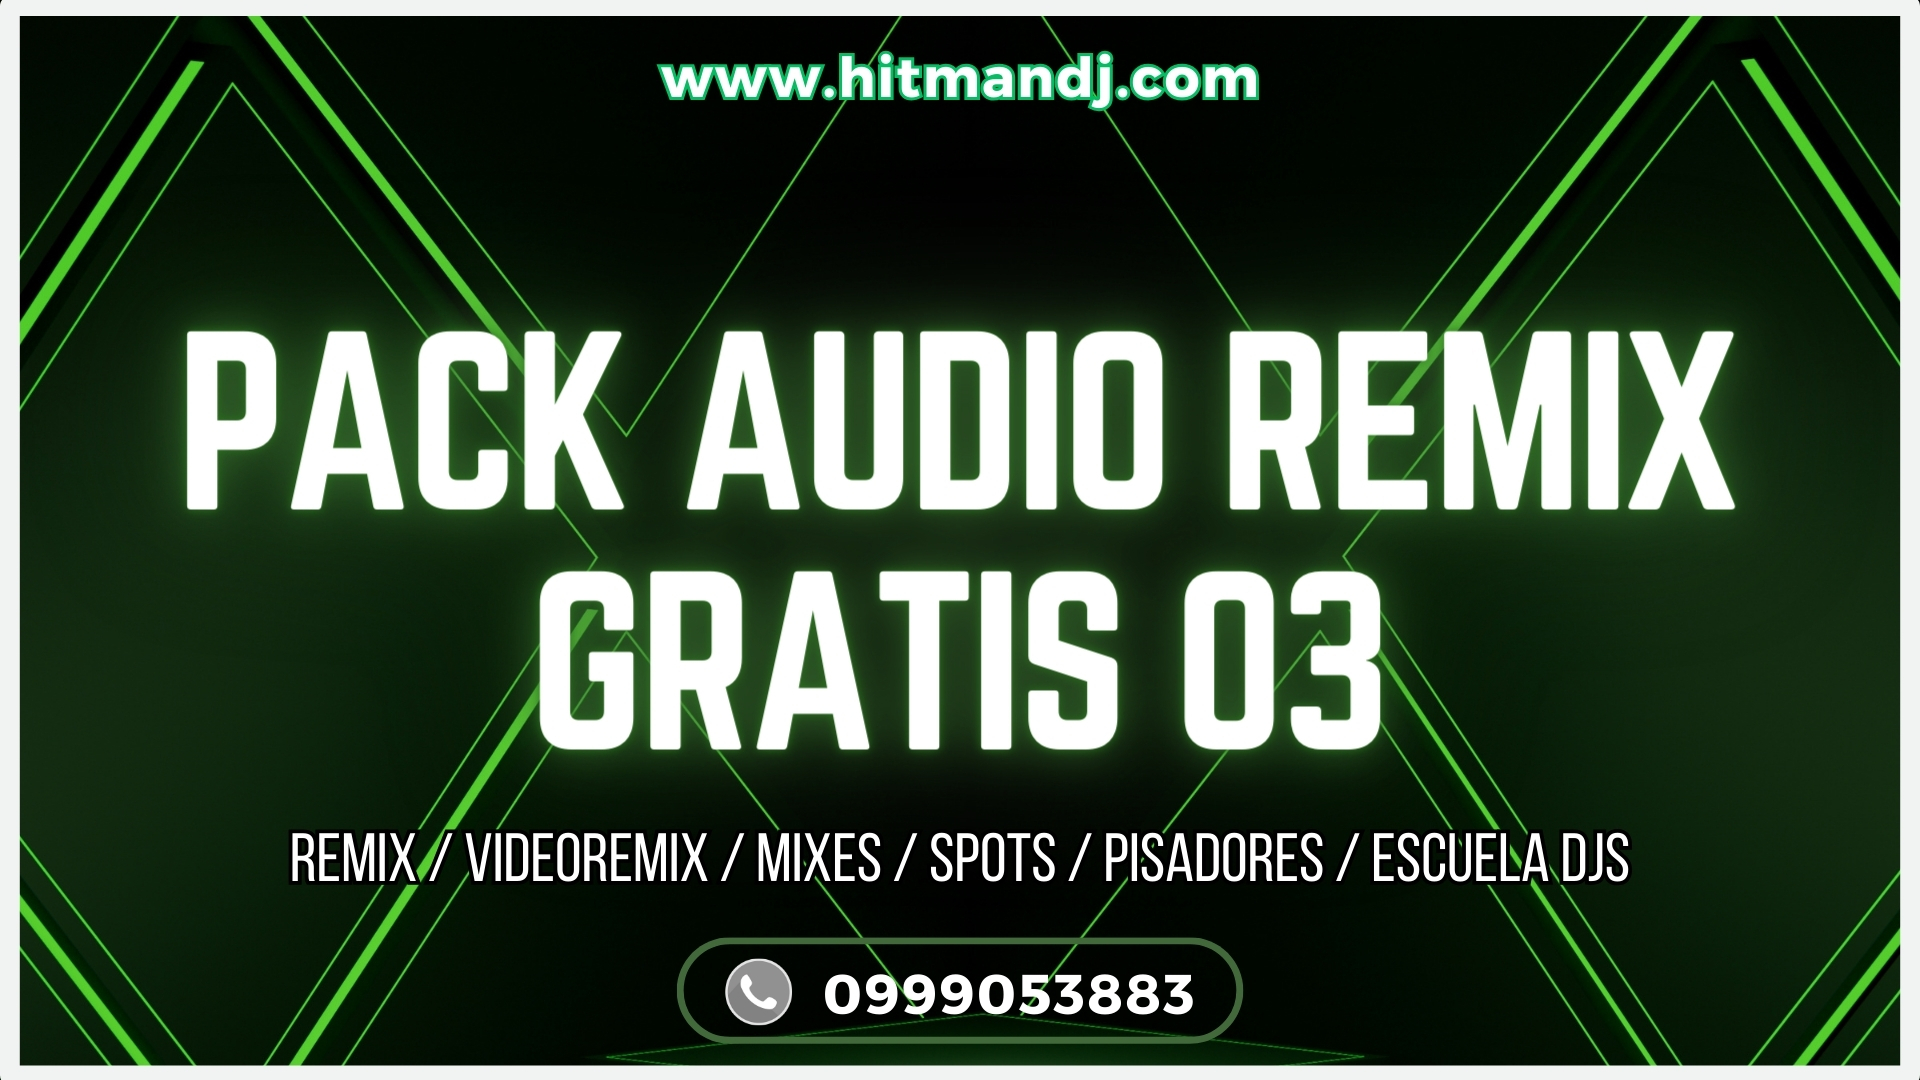 PACK AUDIO REMIX GRATIS 03